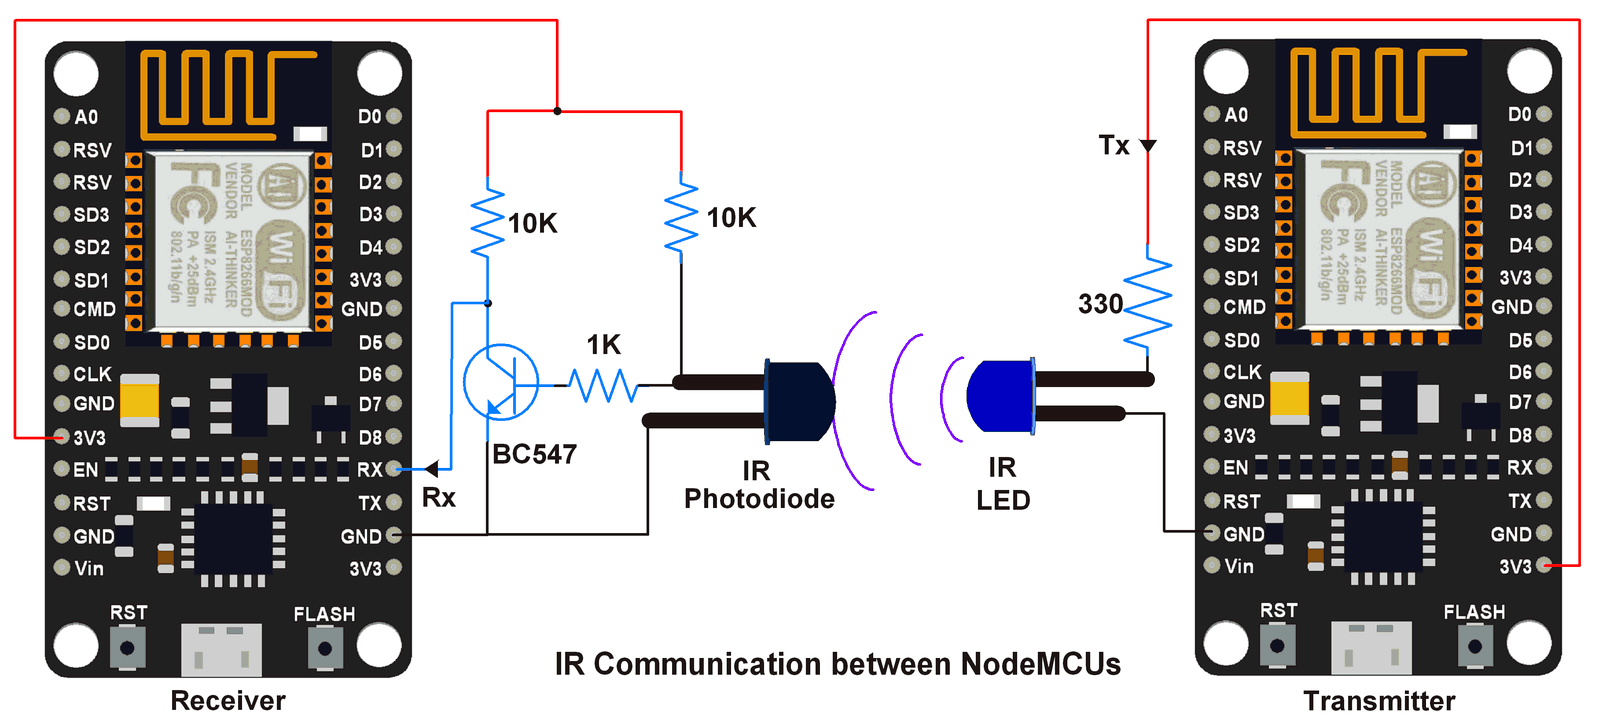 IR communication in between NodeMCUs